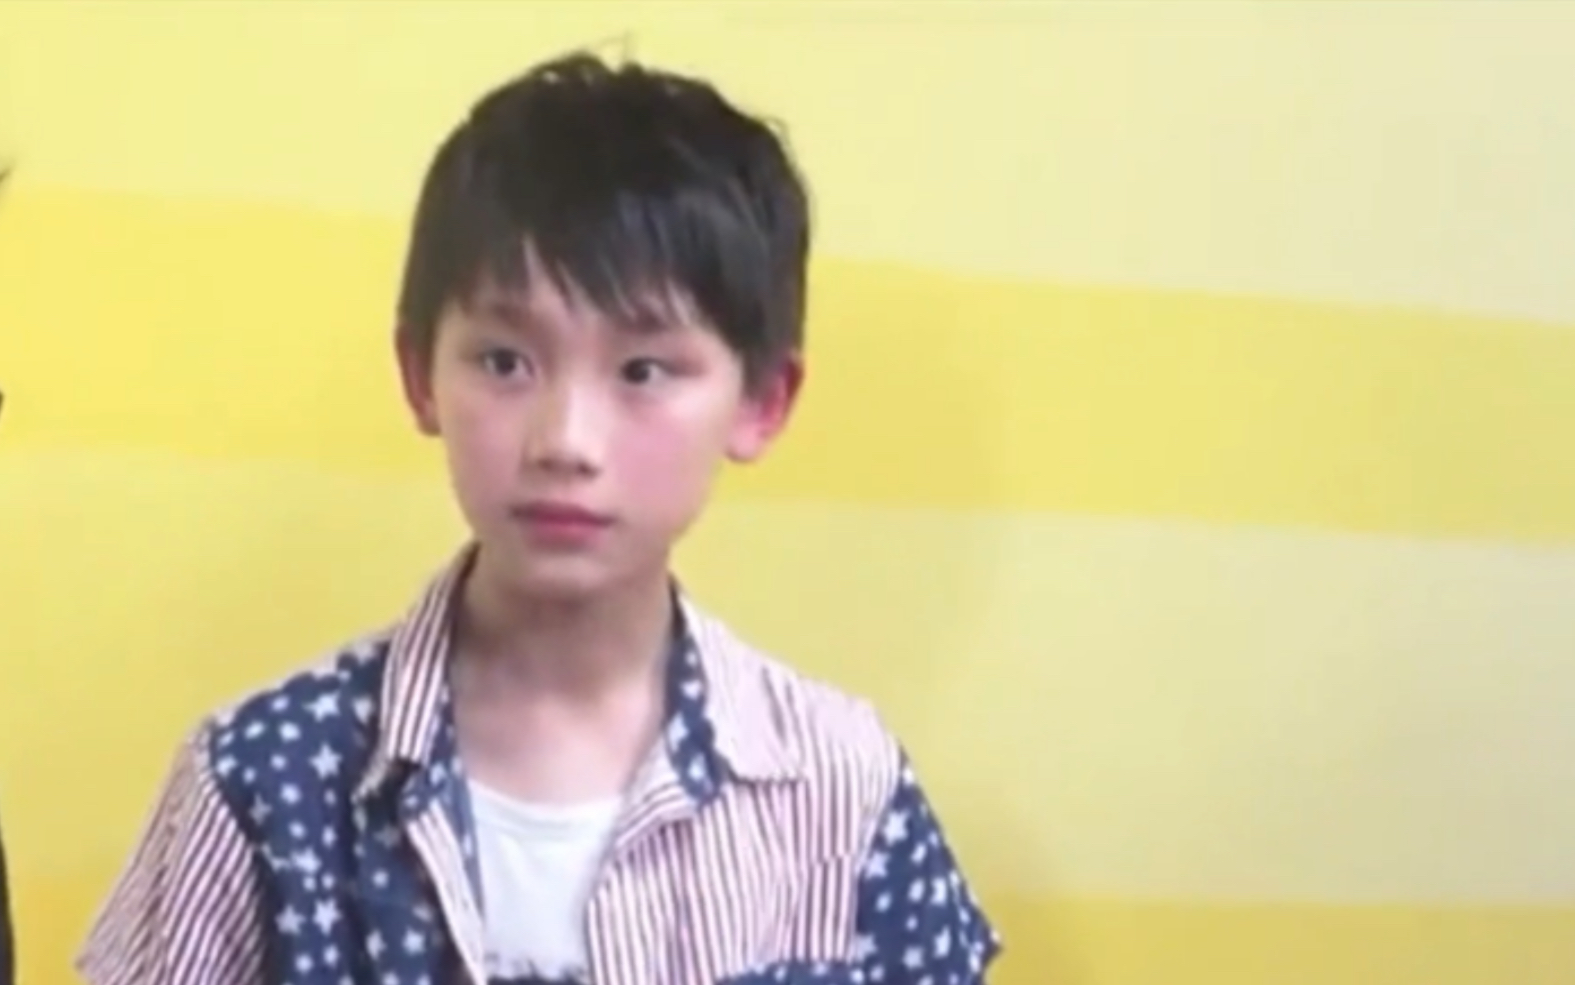 【丁程鑫】程程小朋友穿着王俊凯小时候的同款衬衫第一次正式出现在TF少年GO的录制